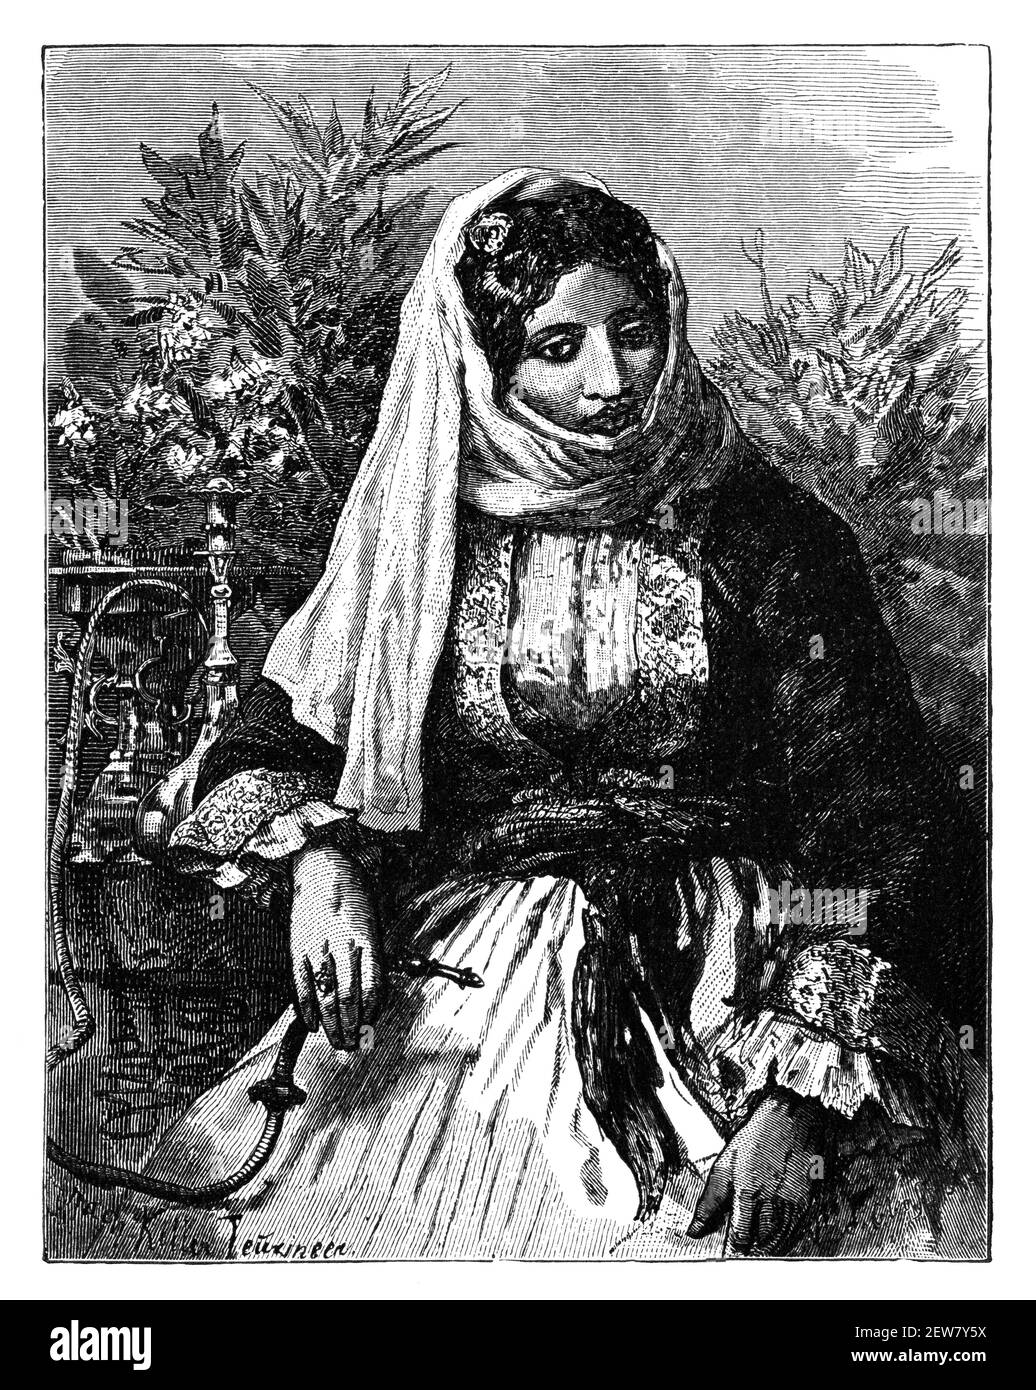 Siriana donna o signora, Siria.Cultura e storia dell'Asia. Immagine in bianco e nero d'epoca. 19 ° secolo. Foto Stock